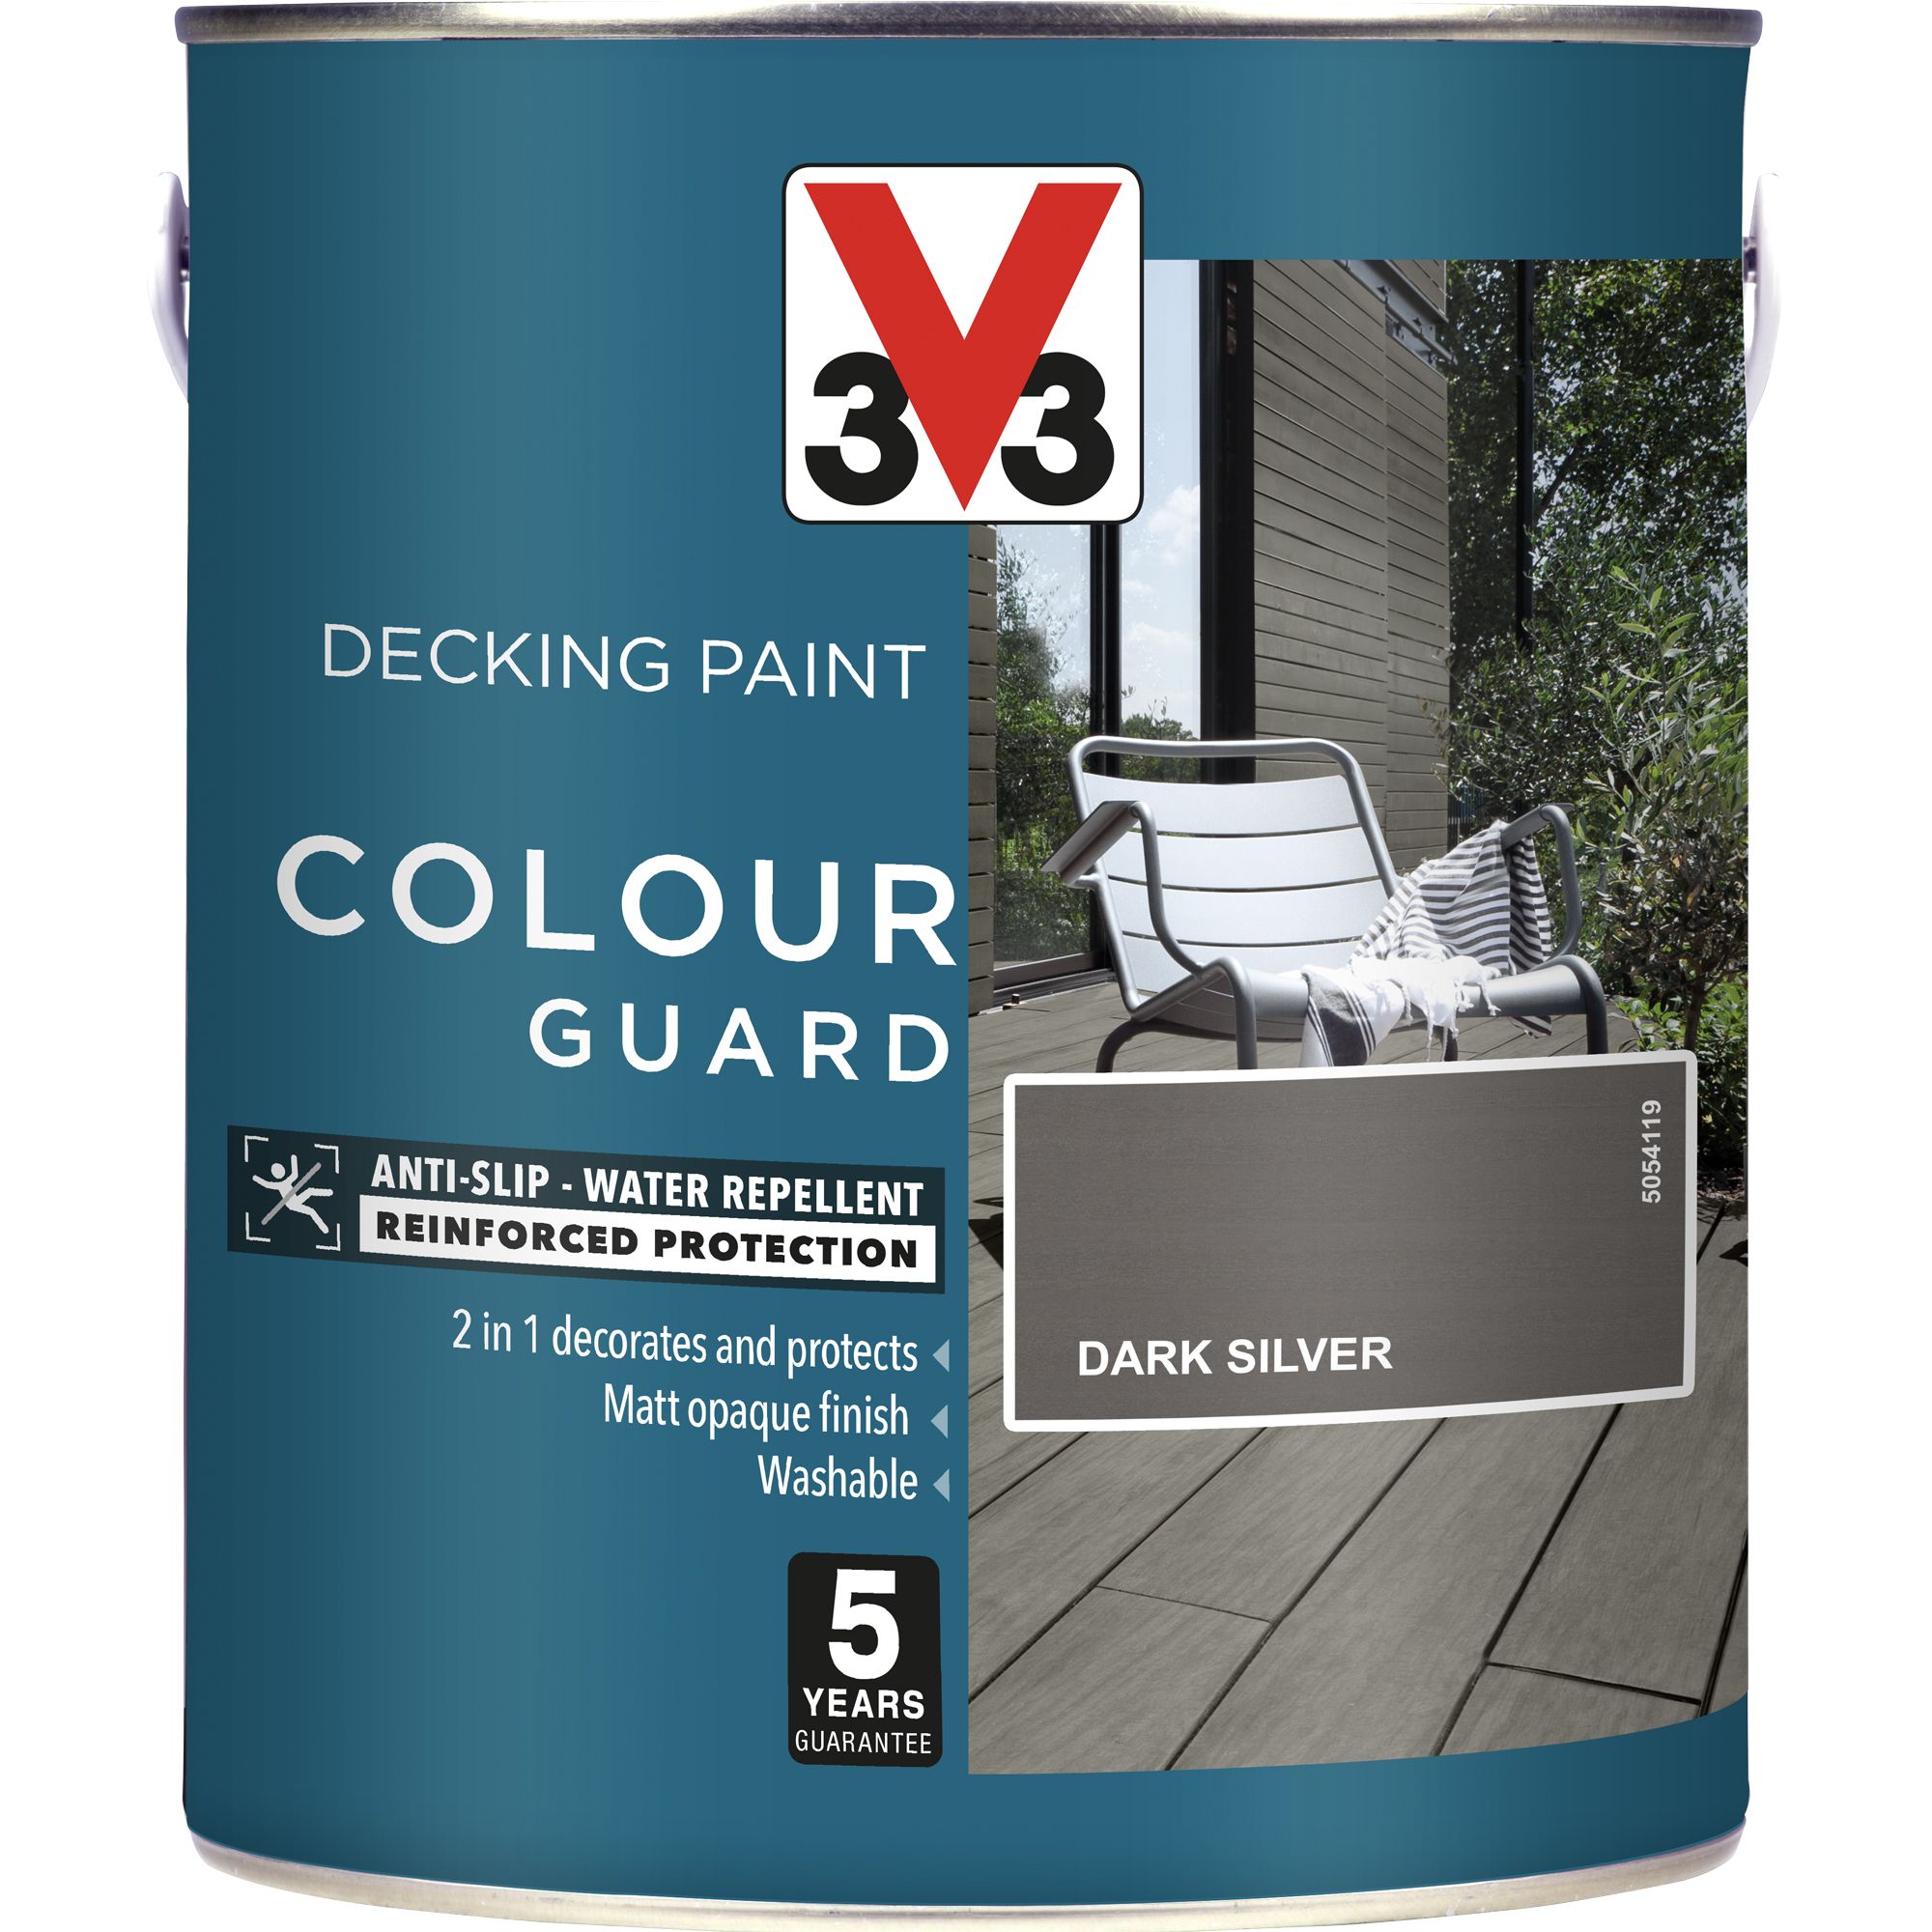 V33 Matt dark silver Decking paint, 2.5L